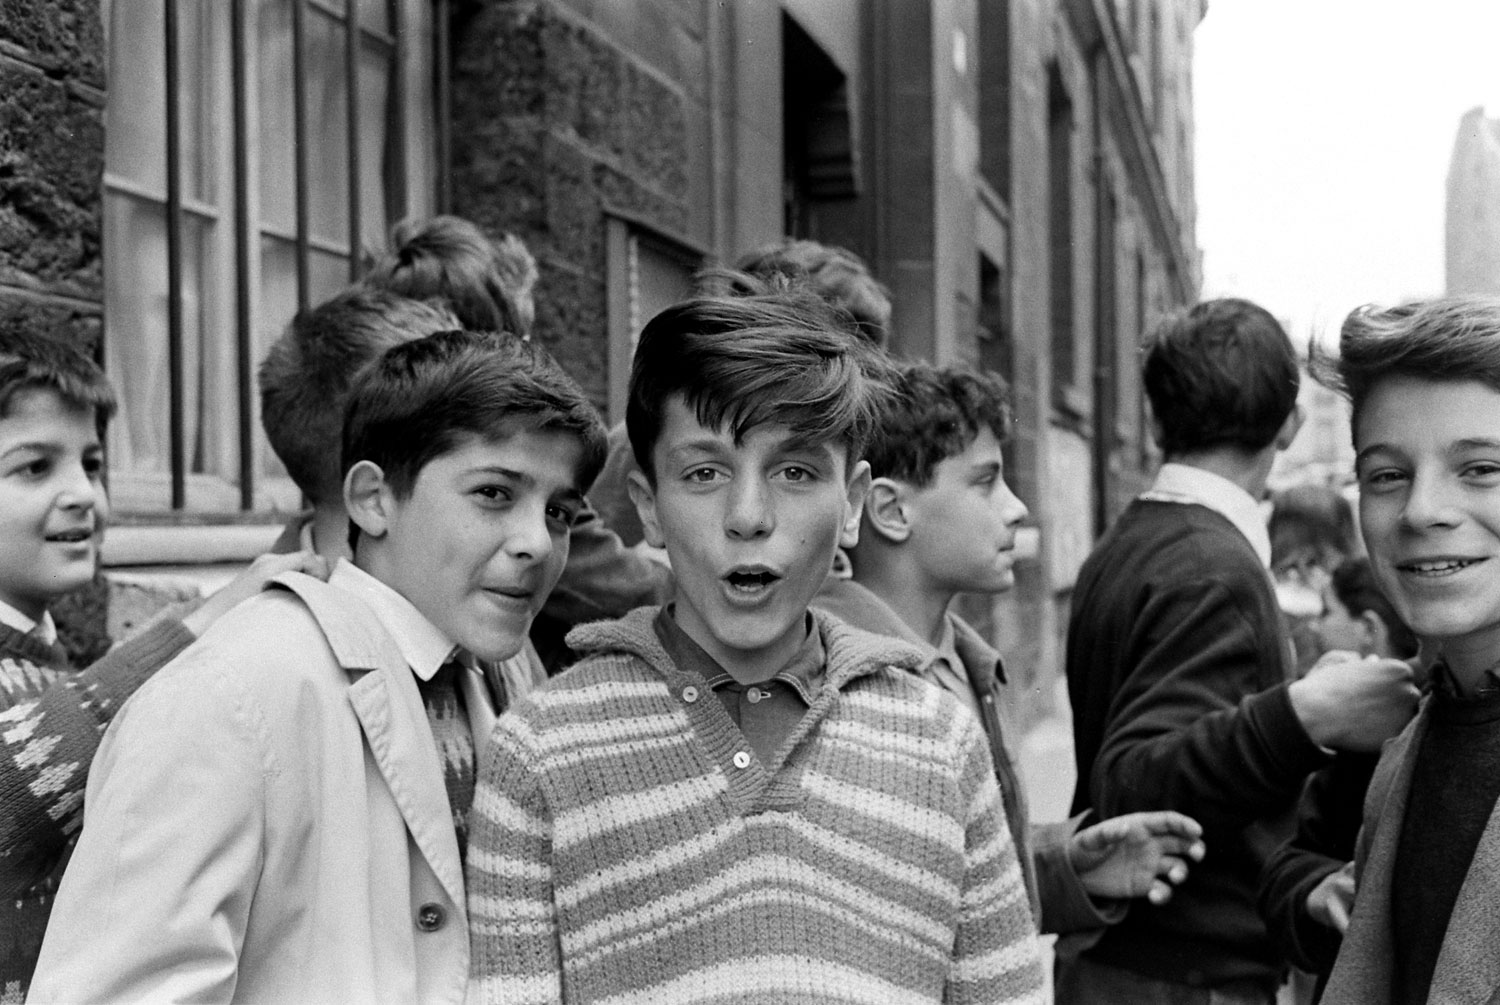 Children, Paris, 1963